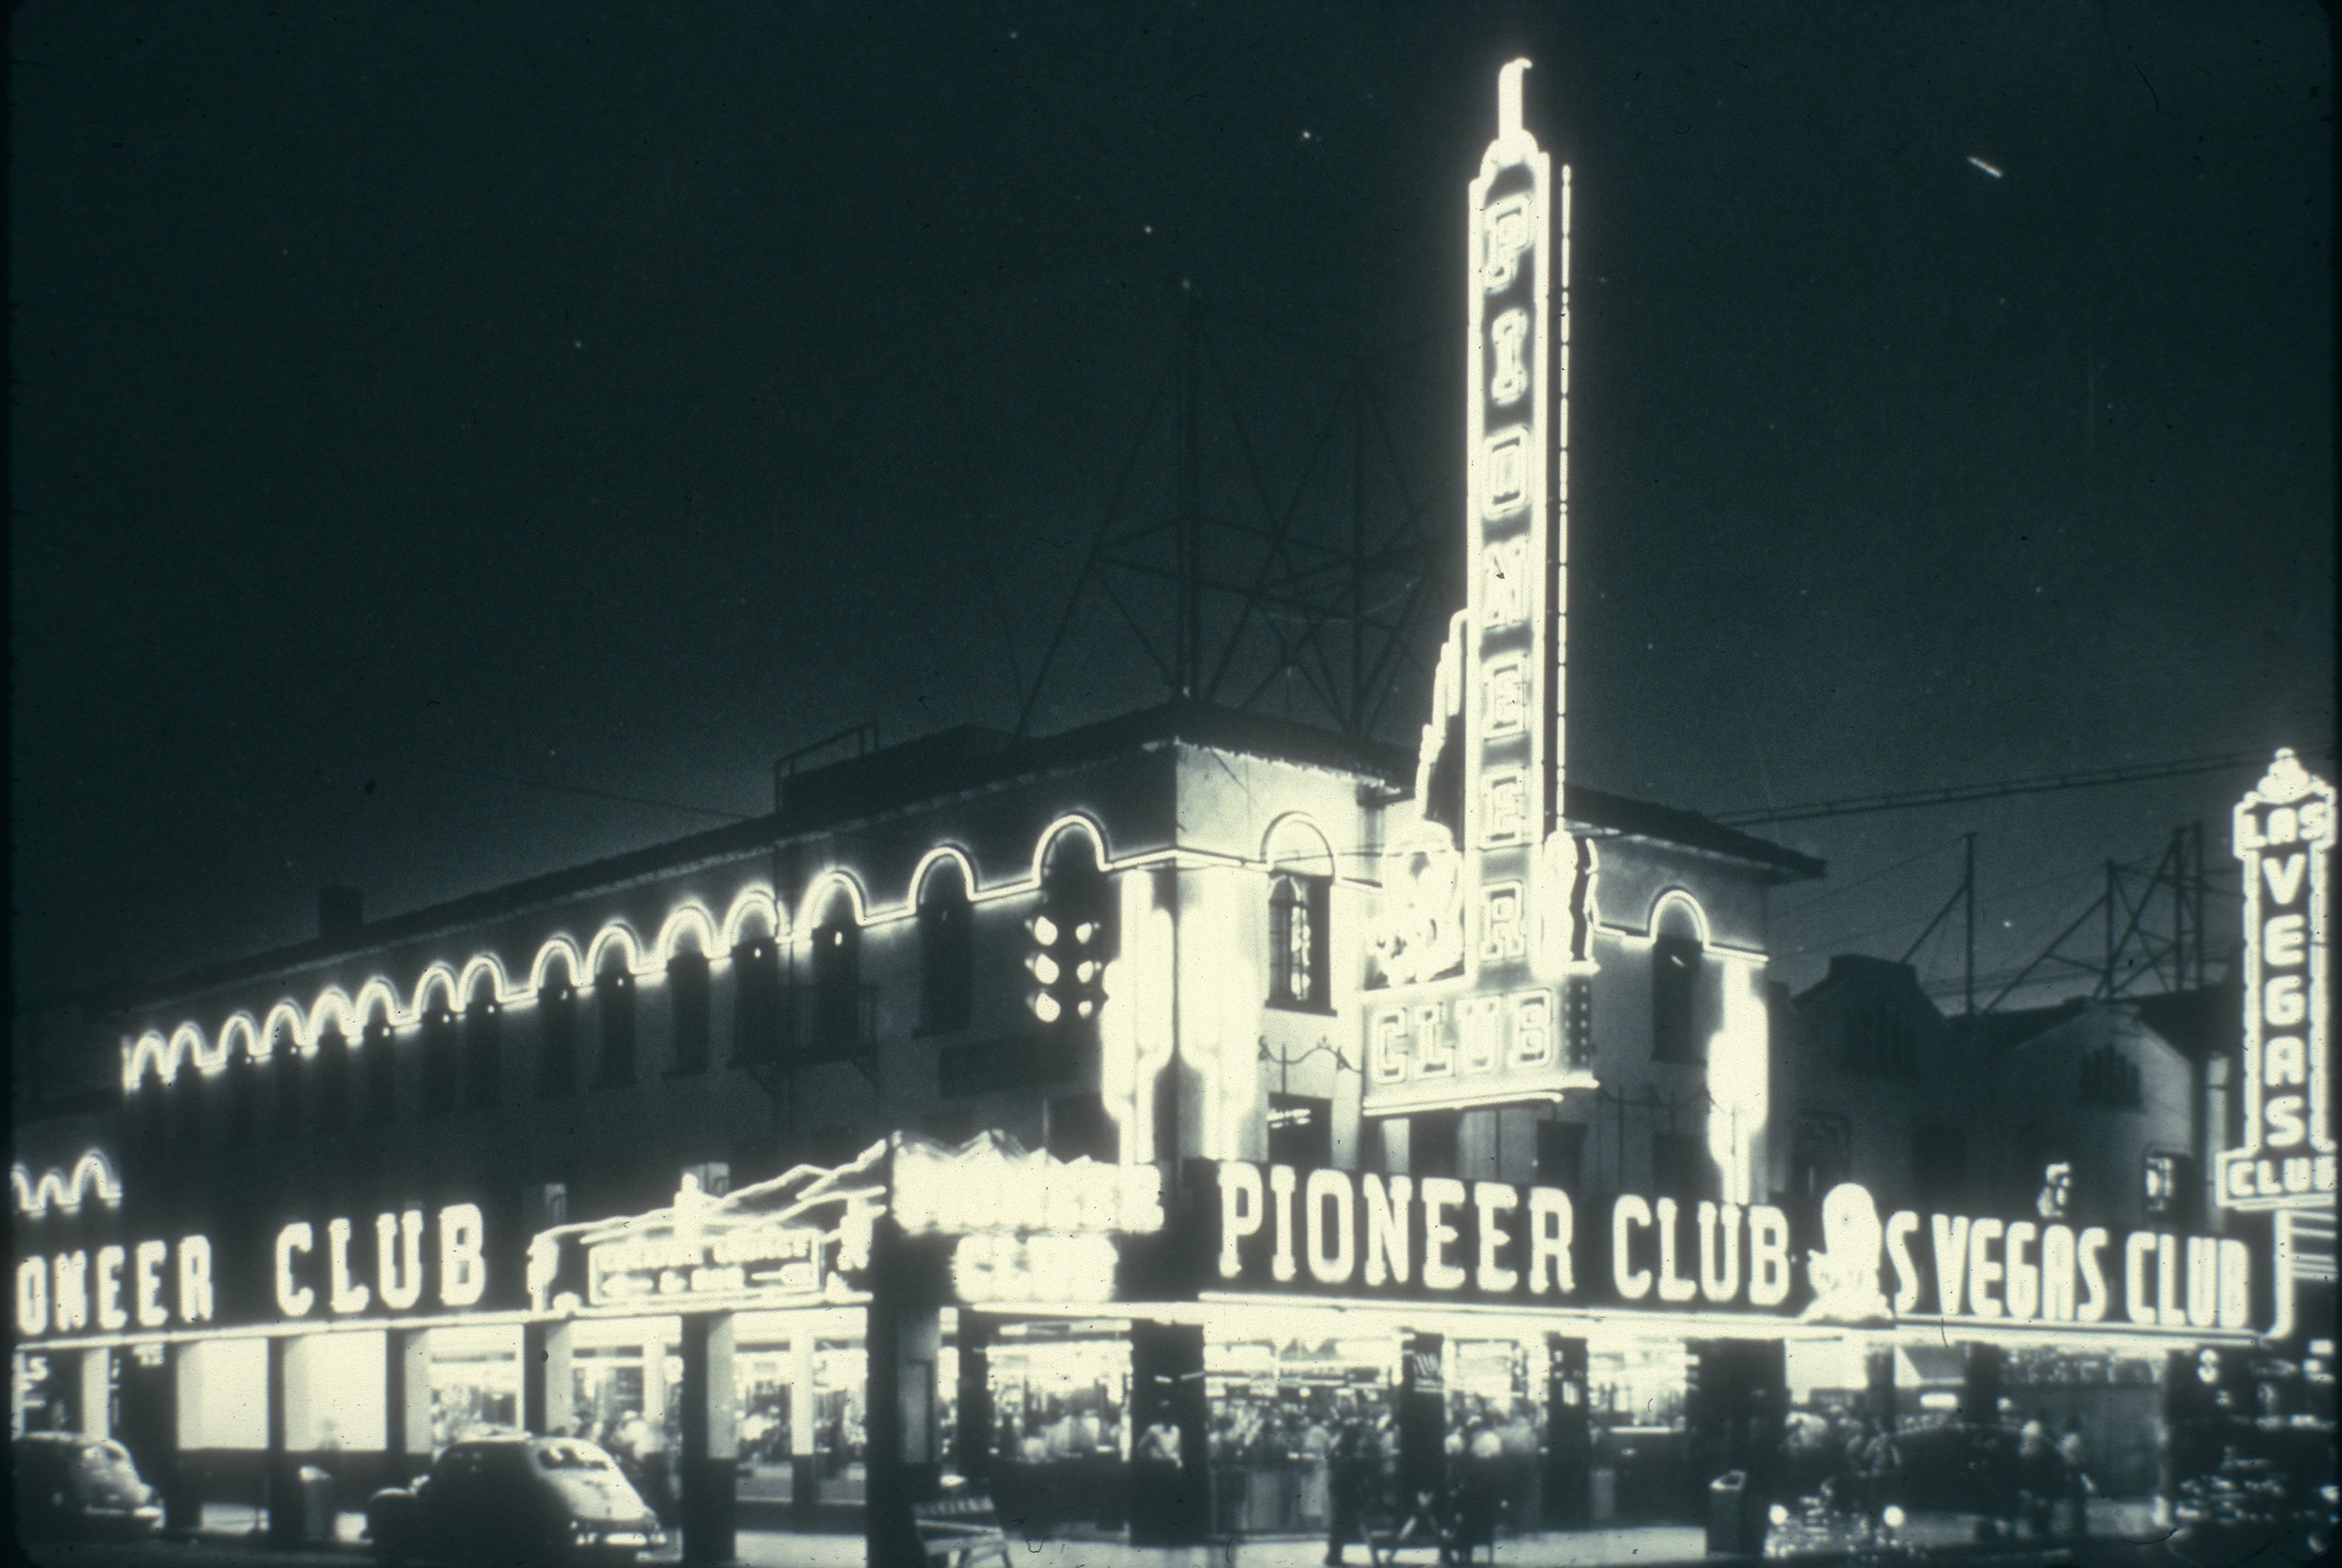 Slide of the Pioneer Club and Las Vegas Club, Las Vegas, circa 1930s